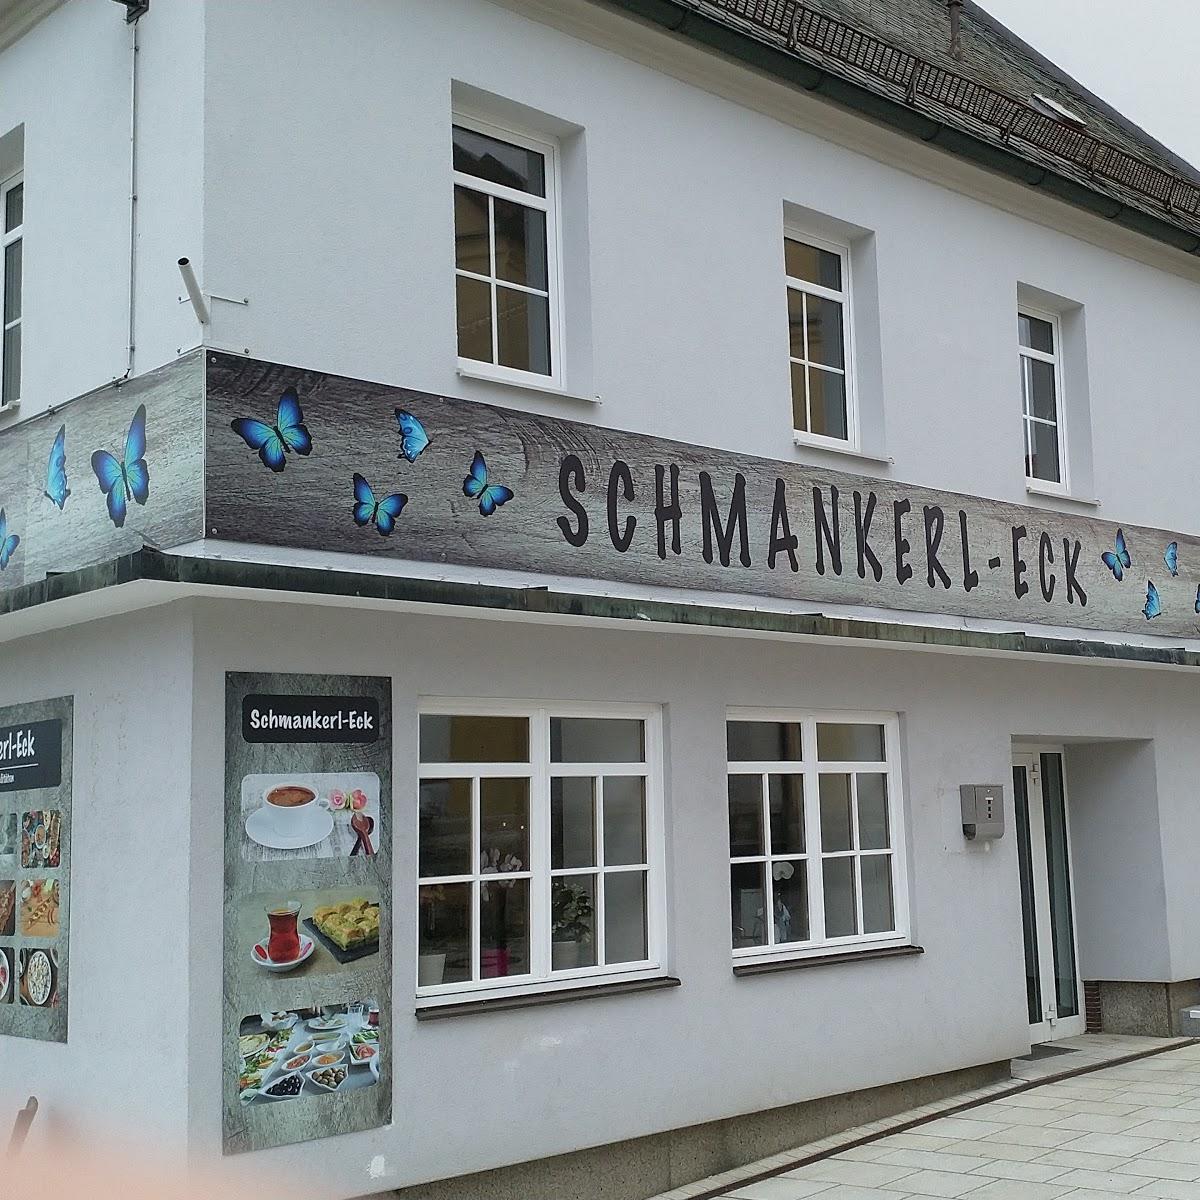 Restaurant "Schmankerl Eck & Papillon Döner" in  Mitterteich